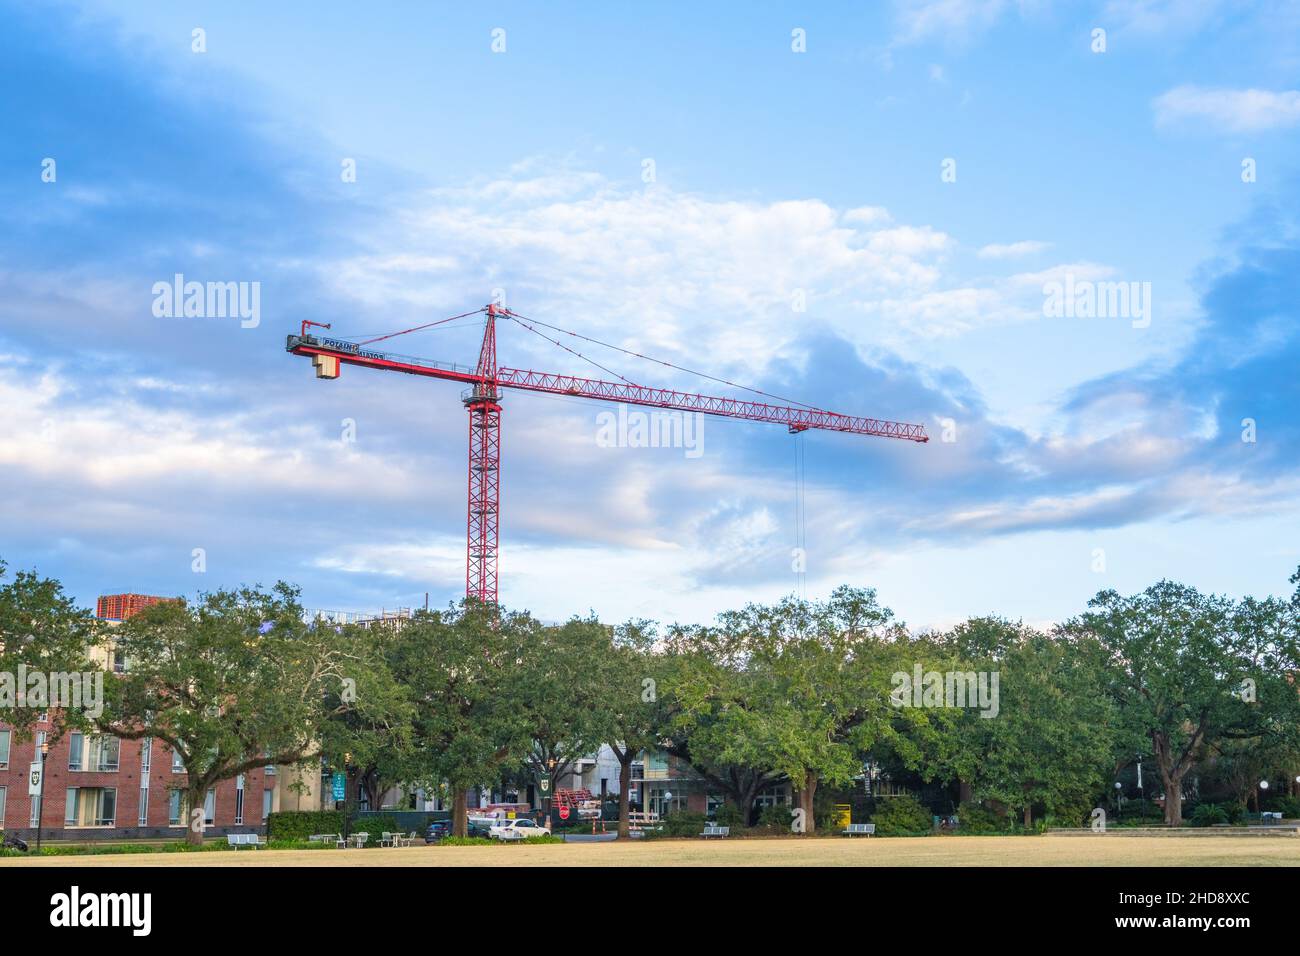 NEW ORLEANS, LA, États-Unis - 24 NOVEMBRE 2021 : grue en porte-à-faux avec ciel bleu et nuages en arrière-plan sur le campus de l'université Tulane Banque D'Images